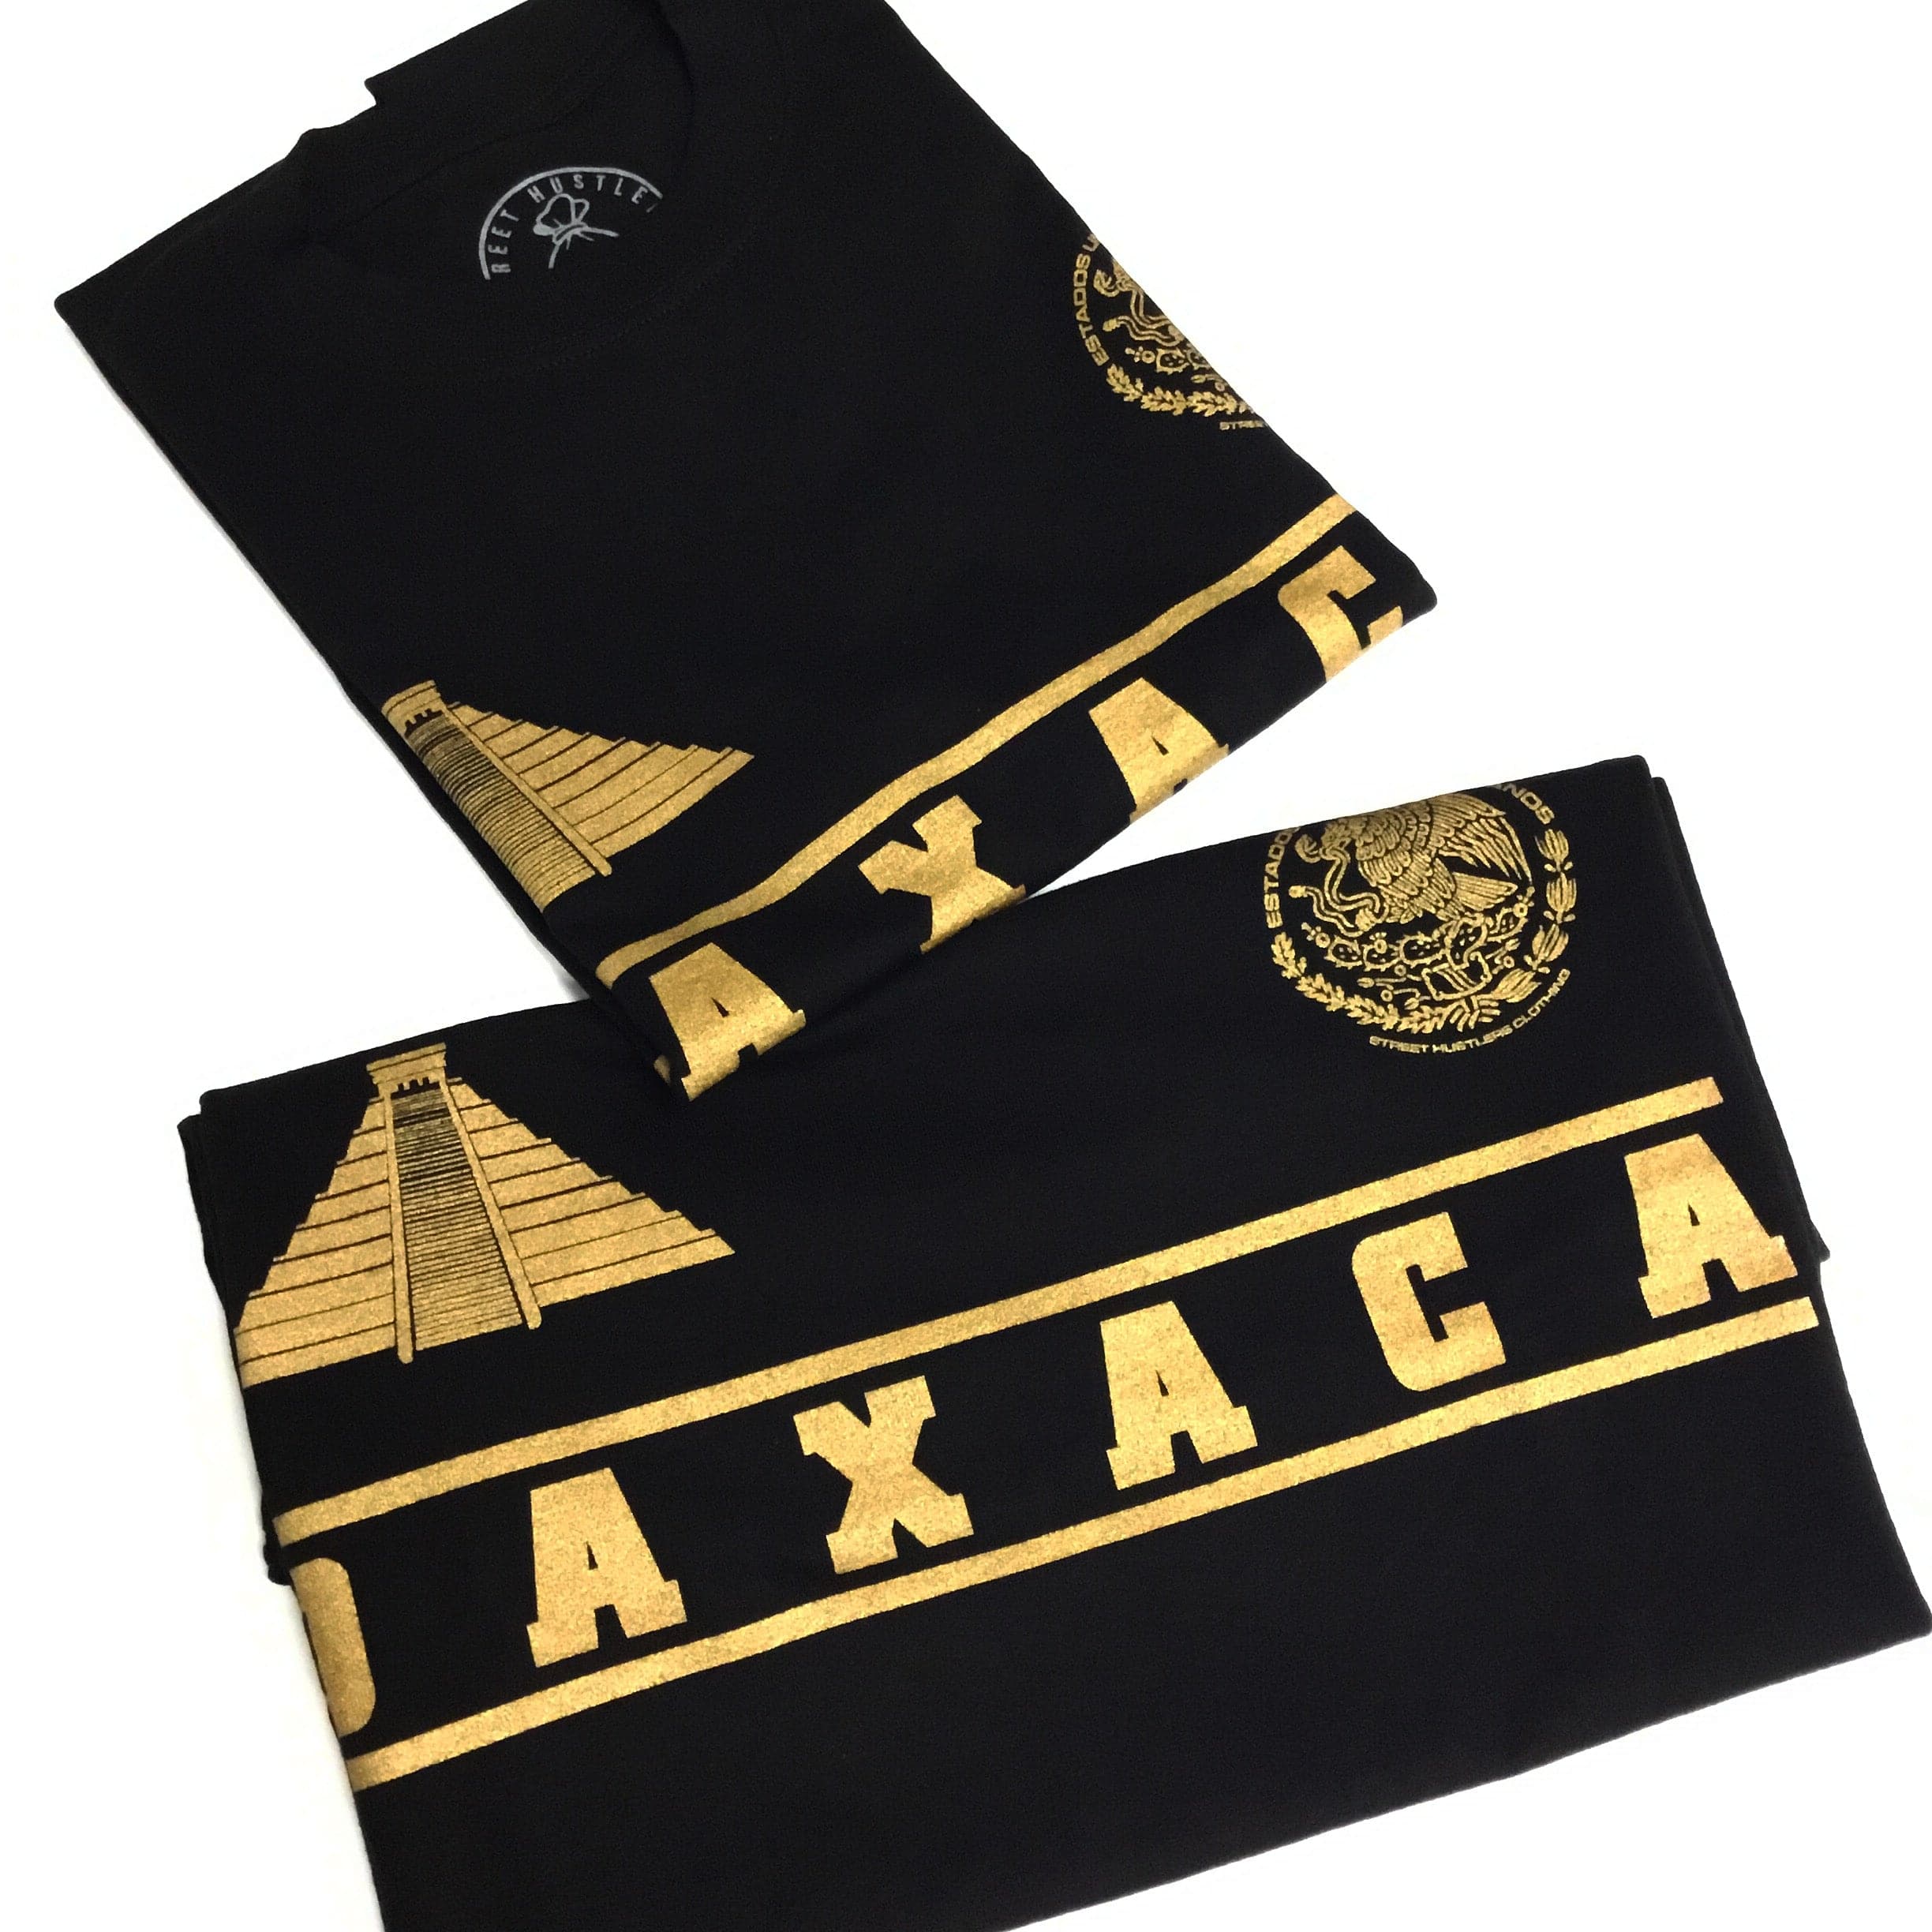 # Oaxaca T-shirt (Black)